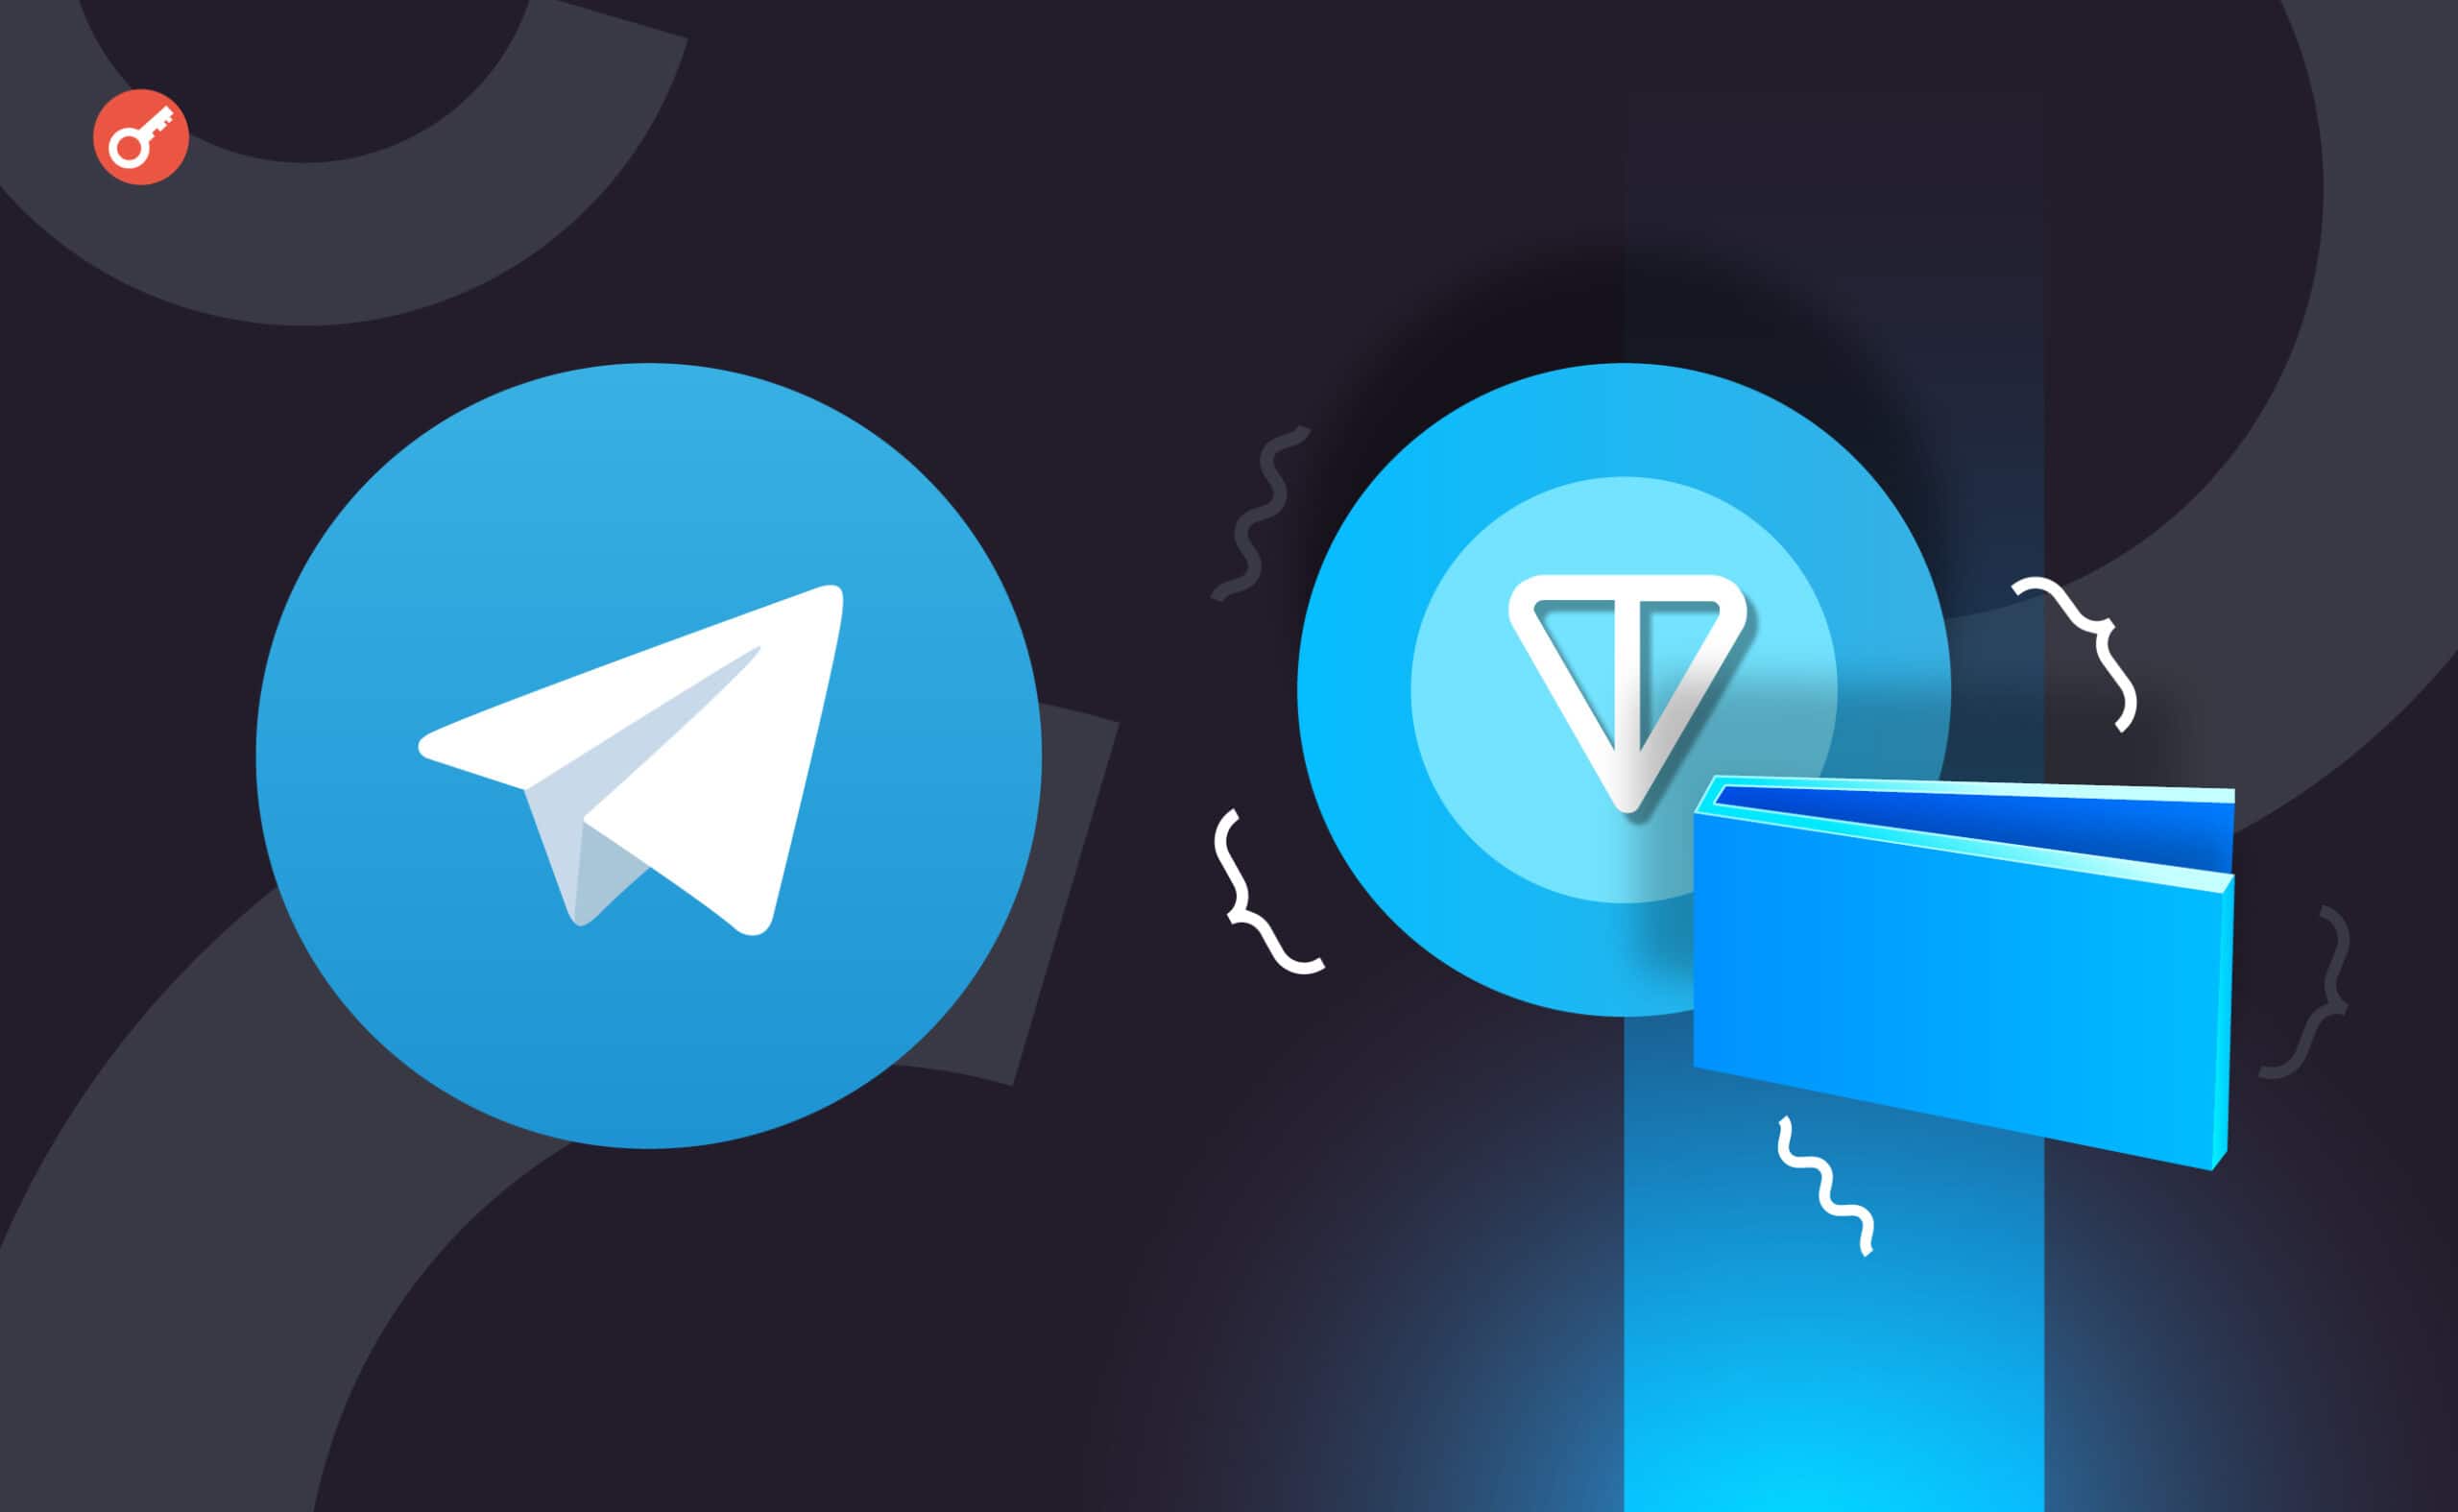 Команда TON объявила о глобальной интеграции Wallet в Telegram. Заглавный коллаж новости.